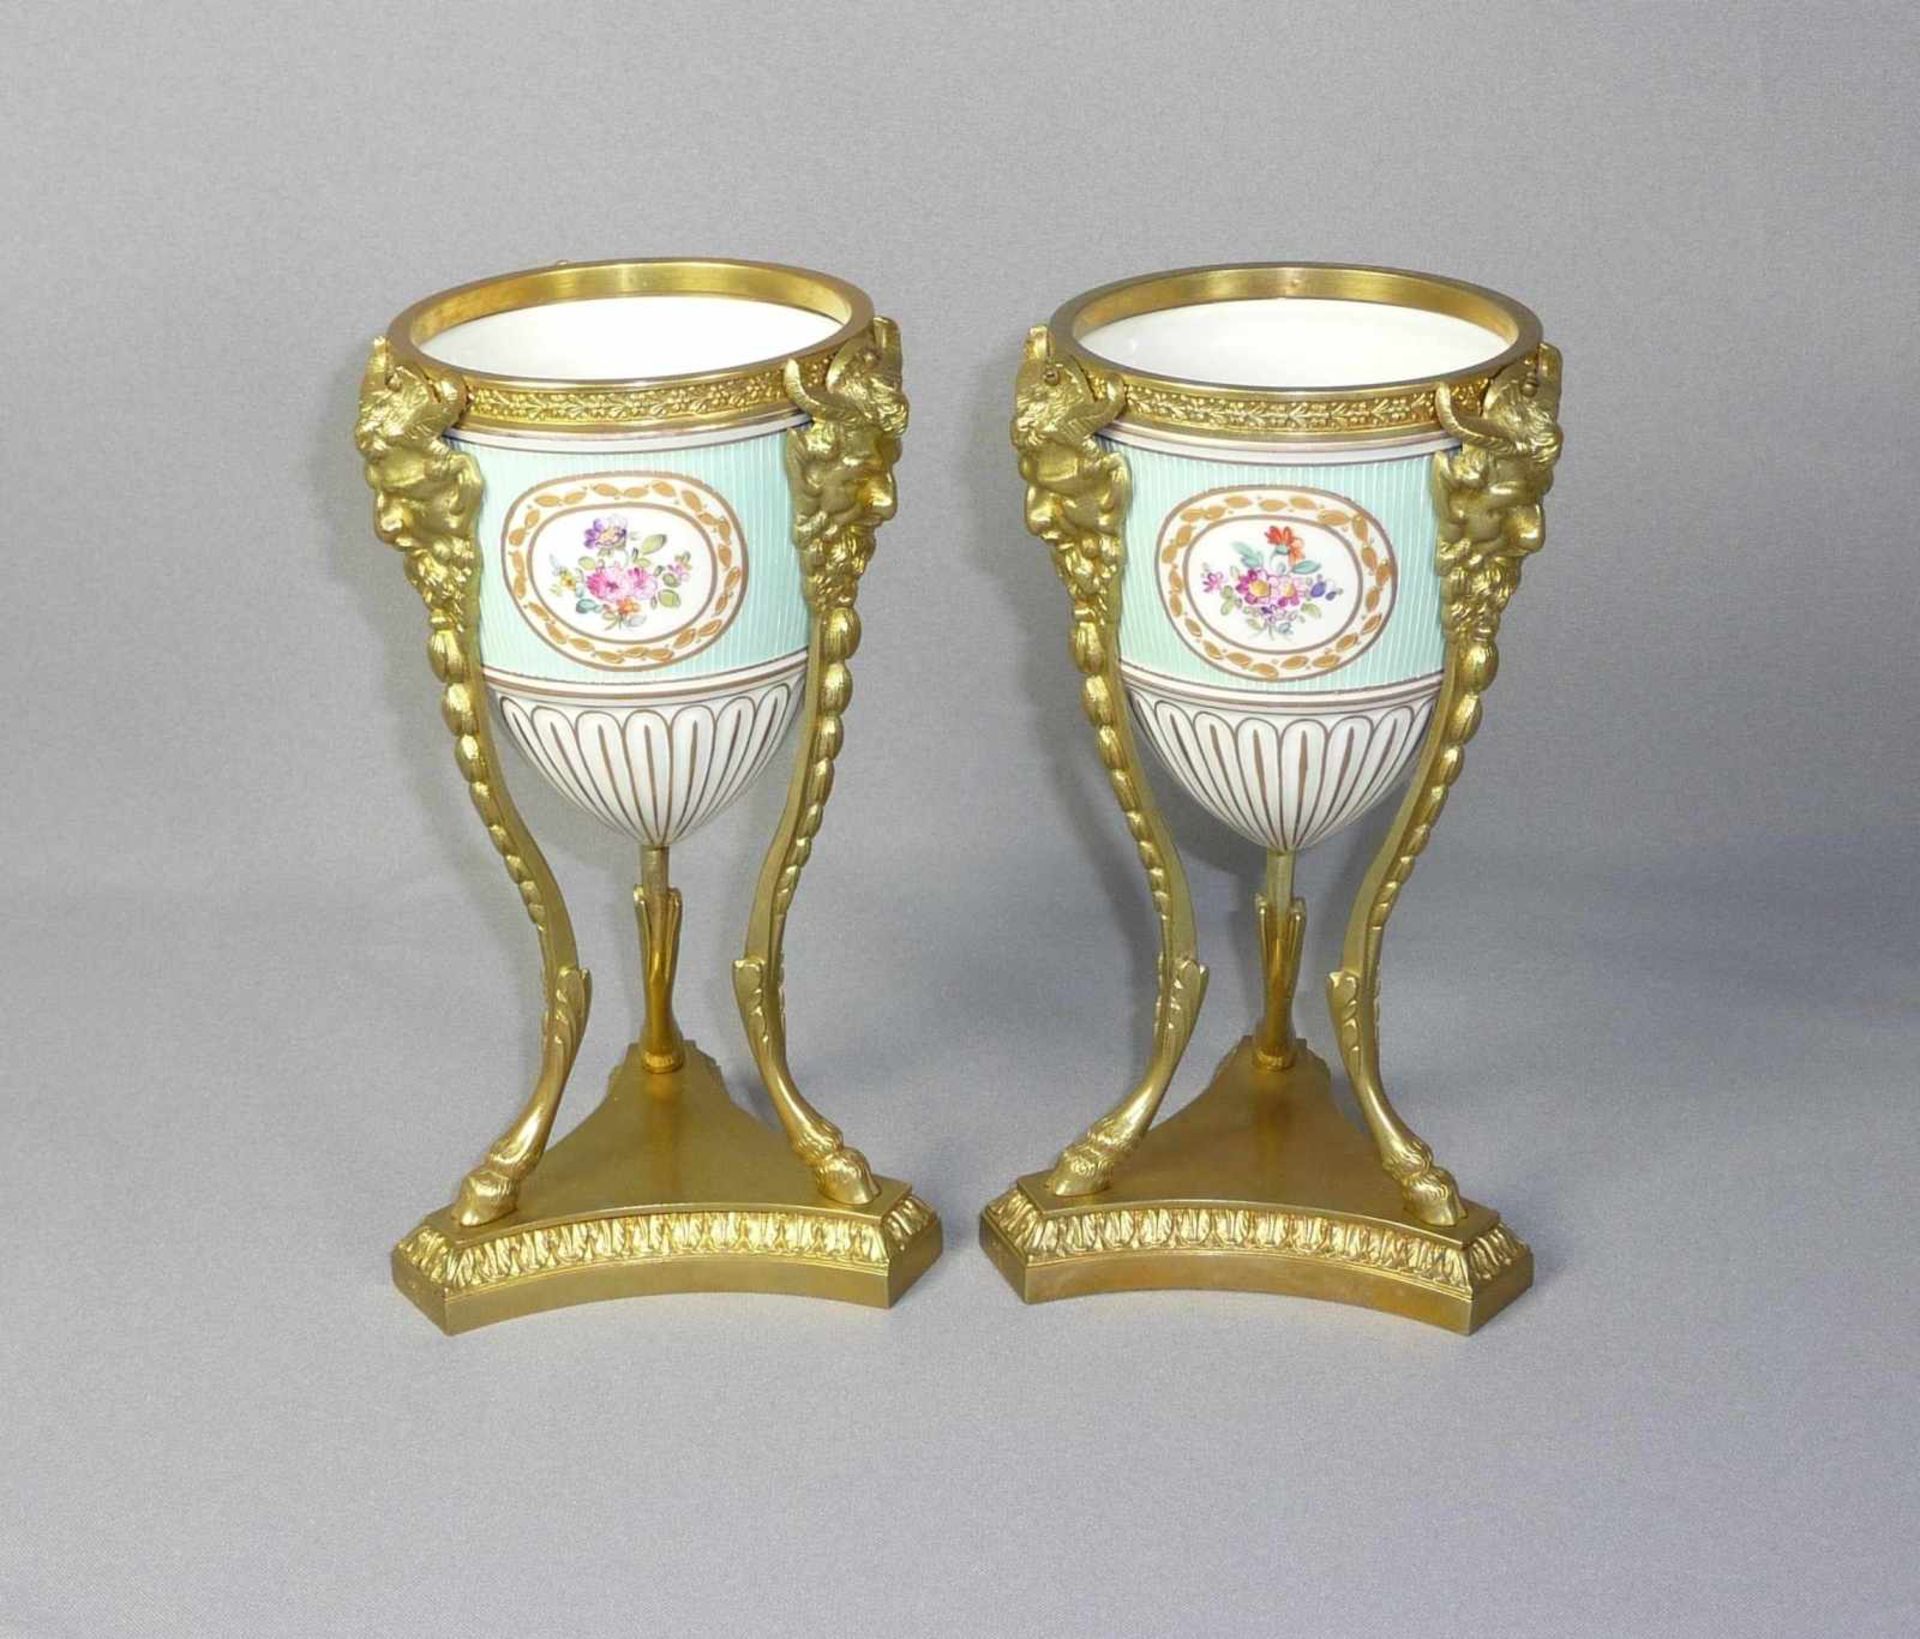 Kleines Potpourri-Vasenpaar mit vergoldeter Montierung Frankreich, 19. Jh. Ovoides Gefäß gefasst von